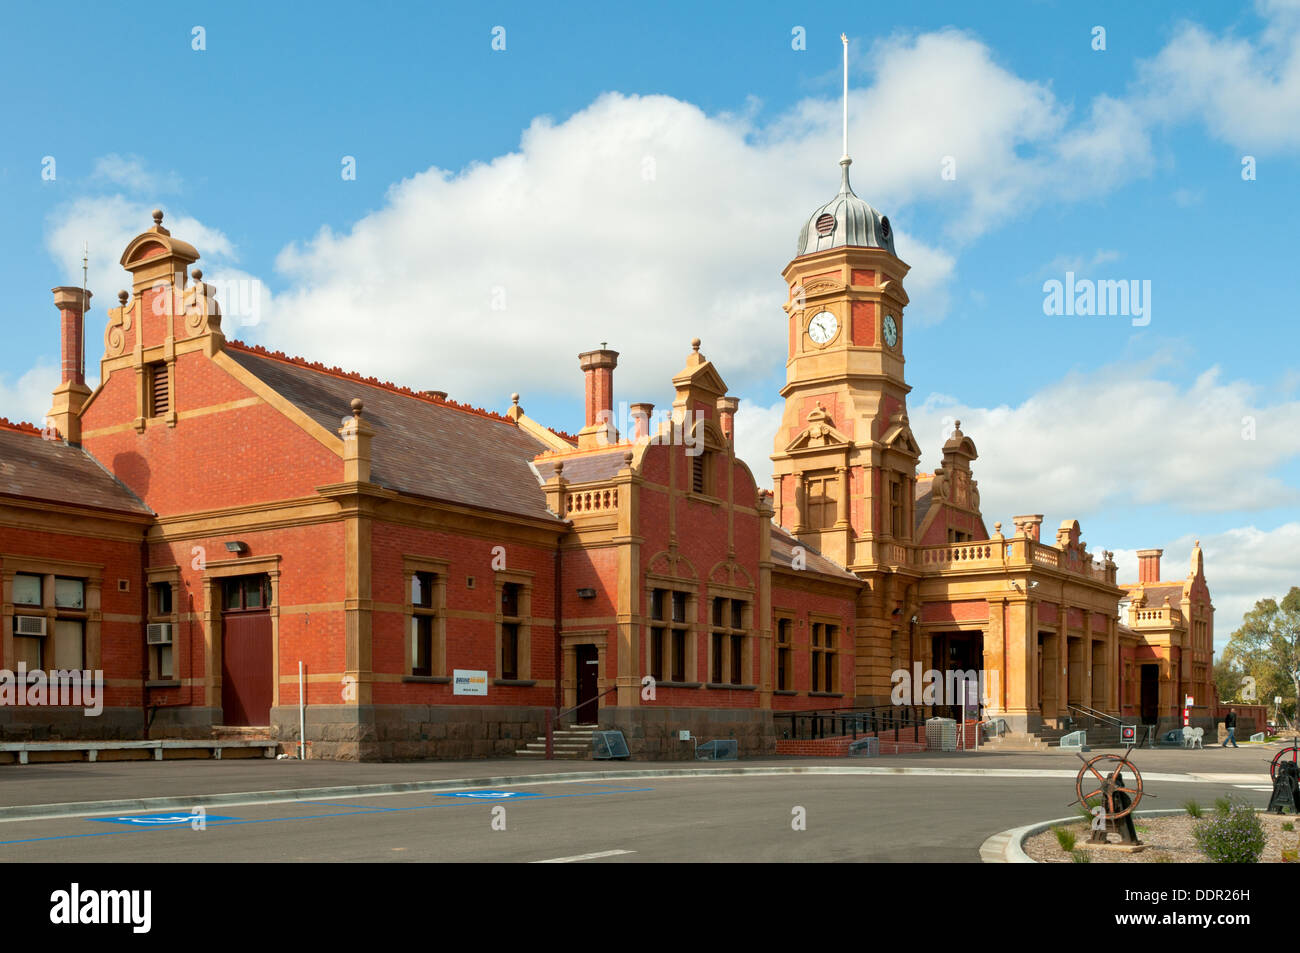 Maryborough Railway Station, Maryborough, Victoria, Australia Foto de stock